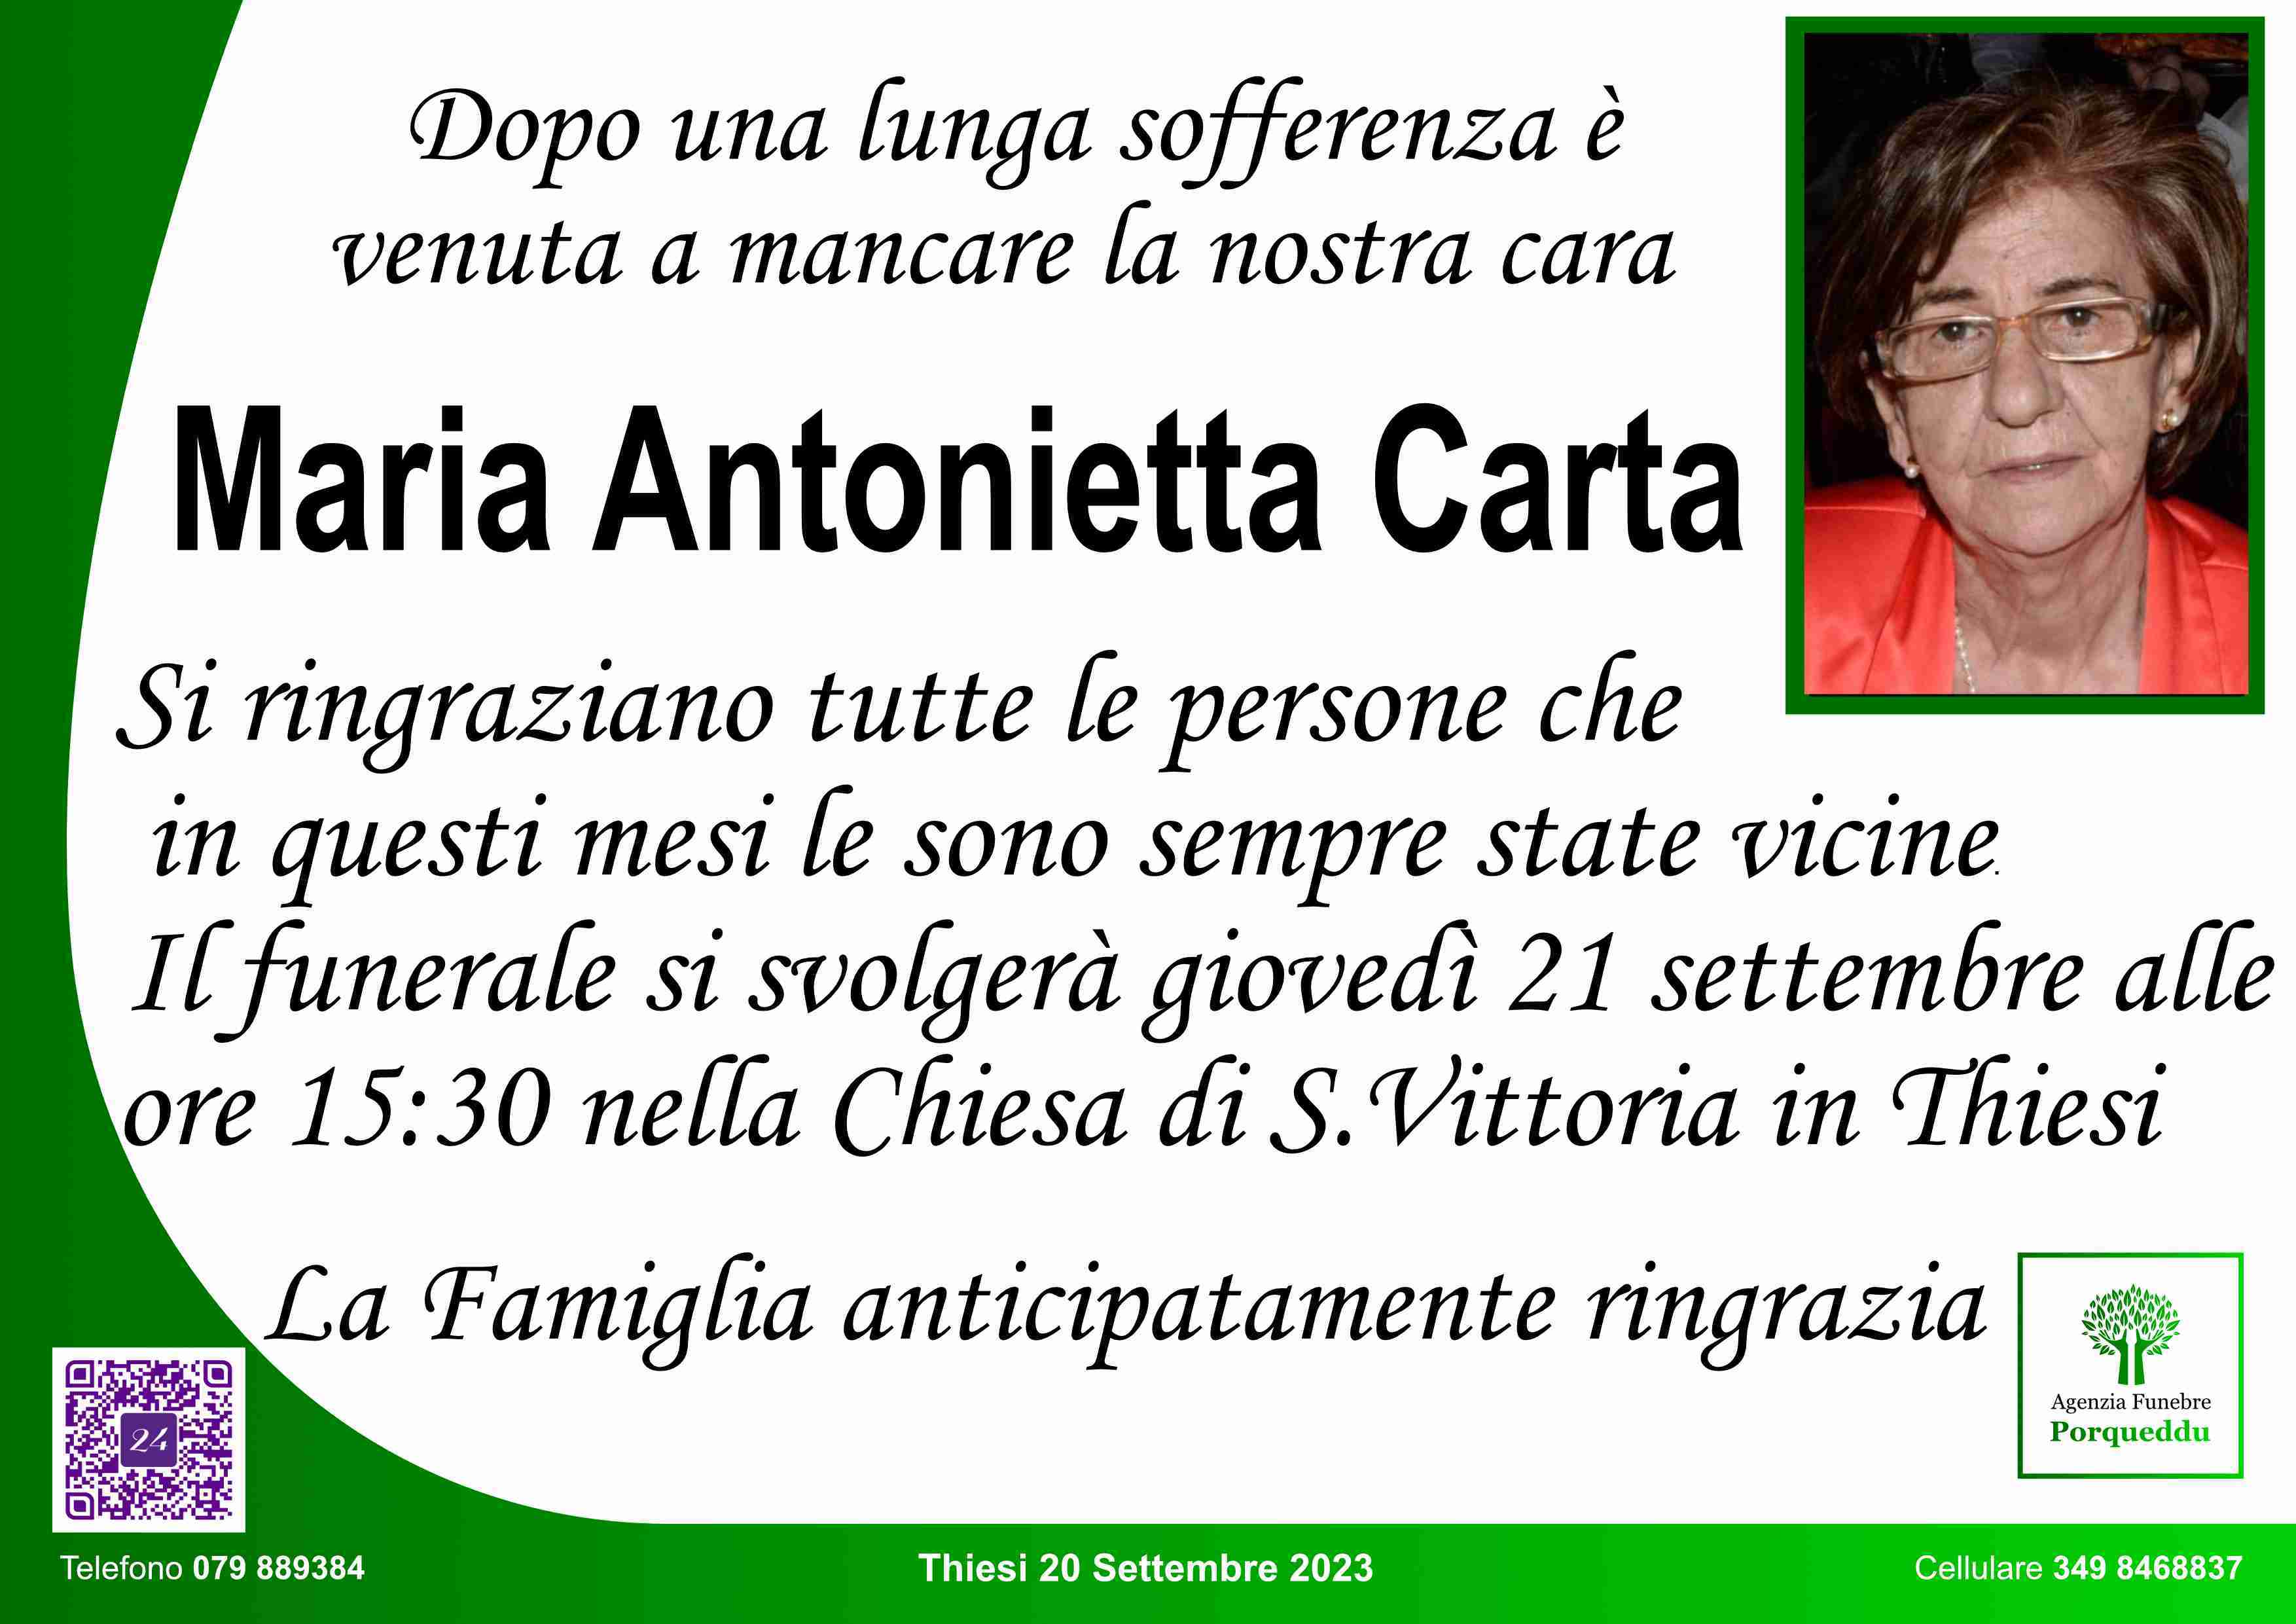 Maria Antonietta Carta